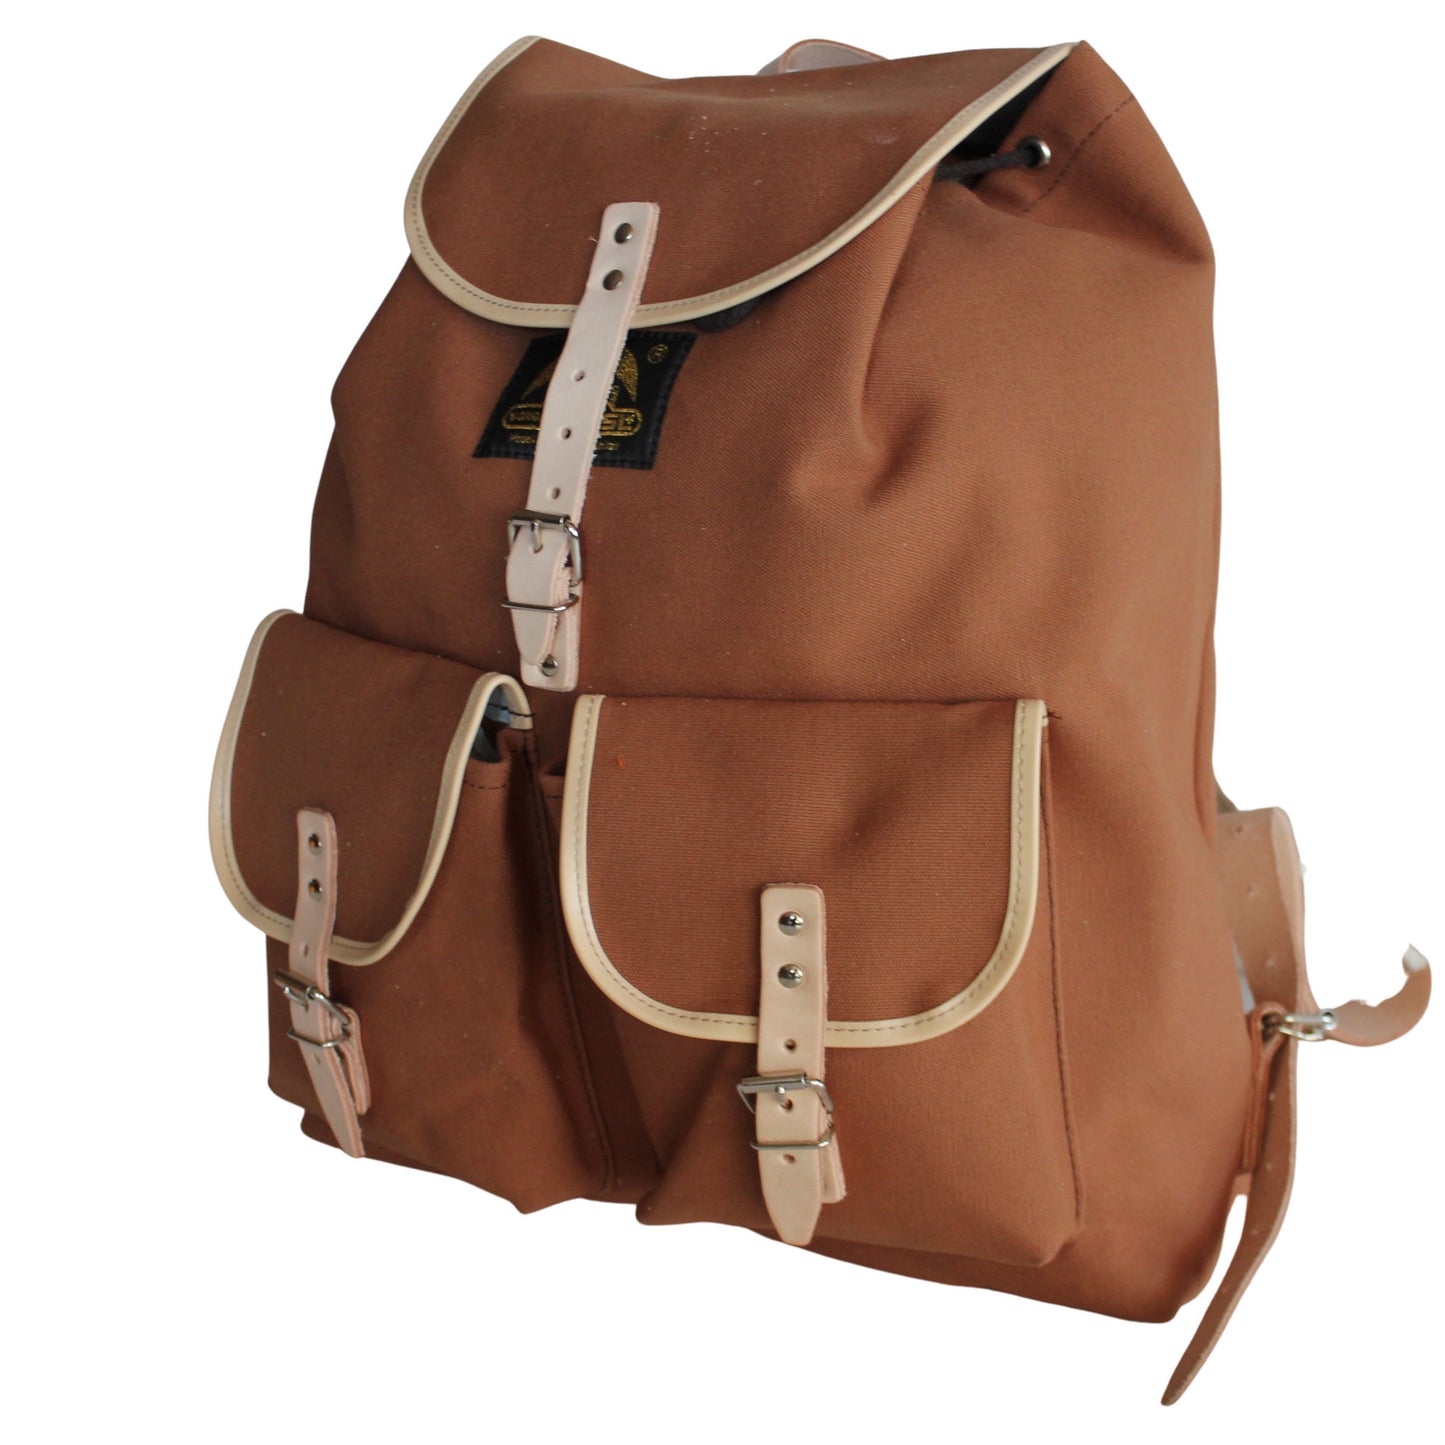 RU137DEPL cotton backpack medium brown with dark brown trim